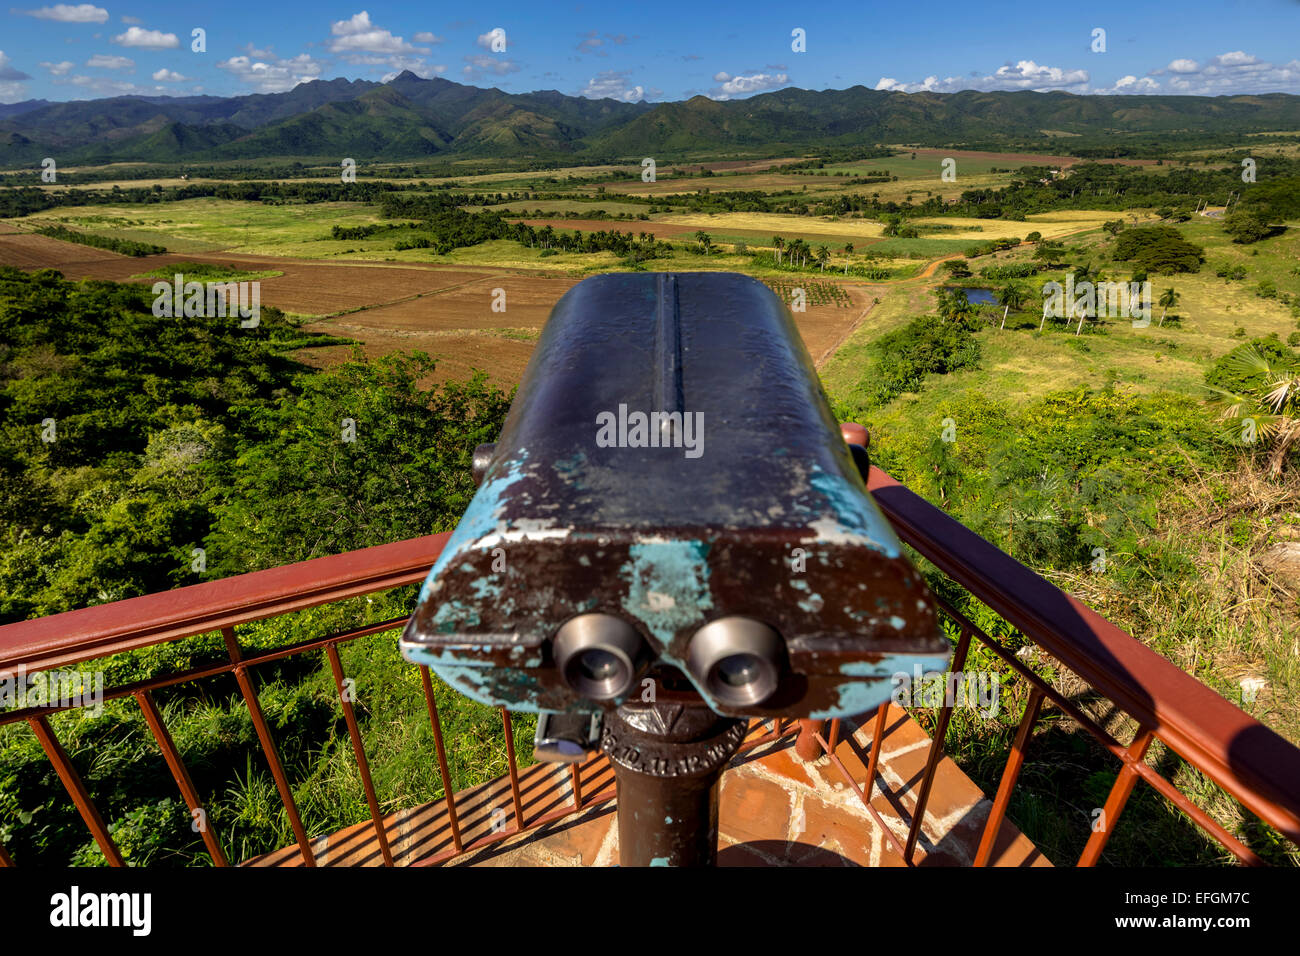 Mirador, lookout avec jumelles, Valle de los Ingenios, province de Sancti Spiritus, Cuba Banque D'Images